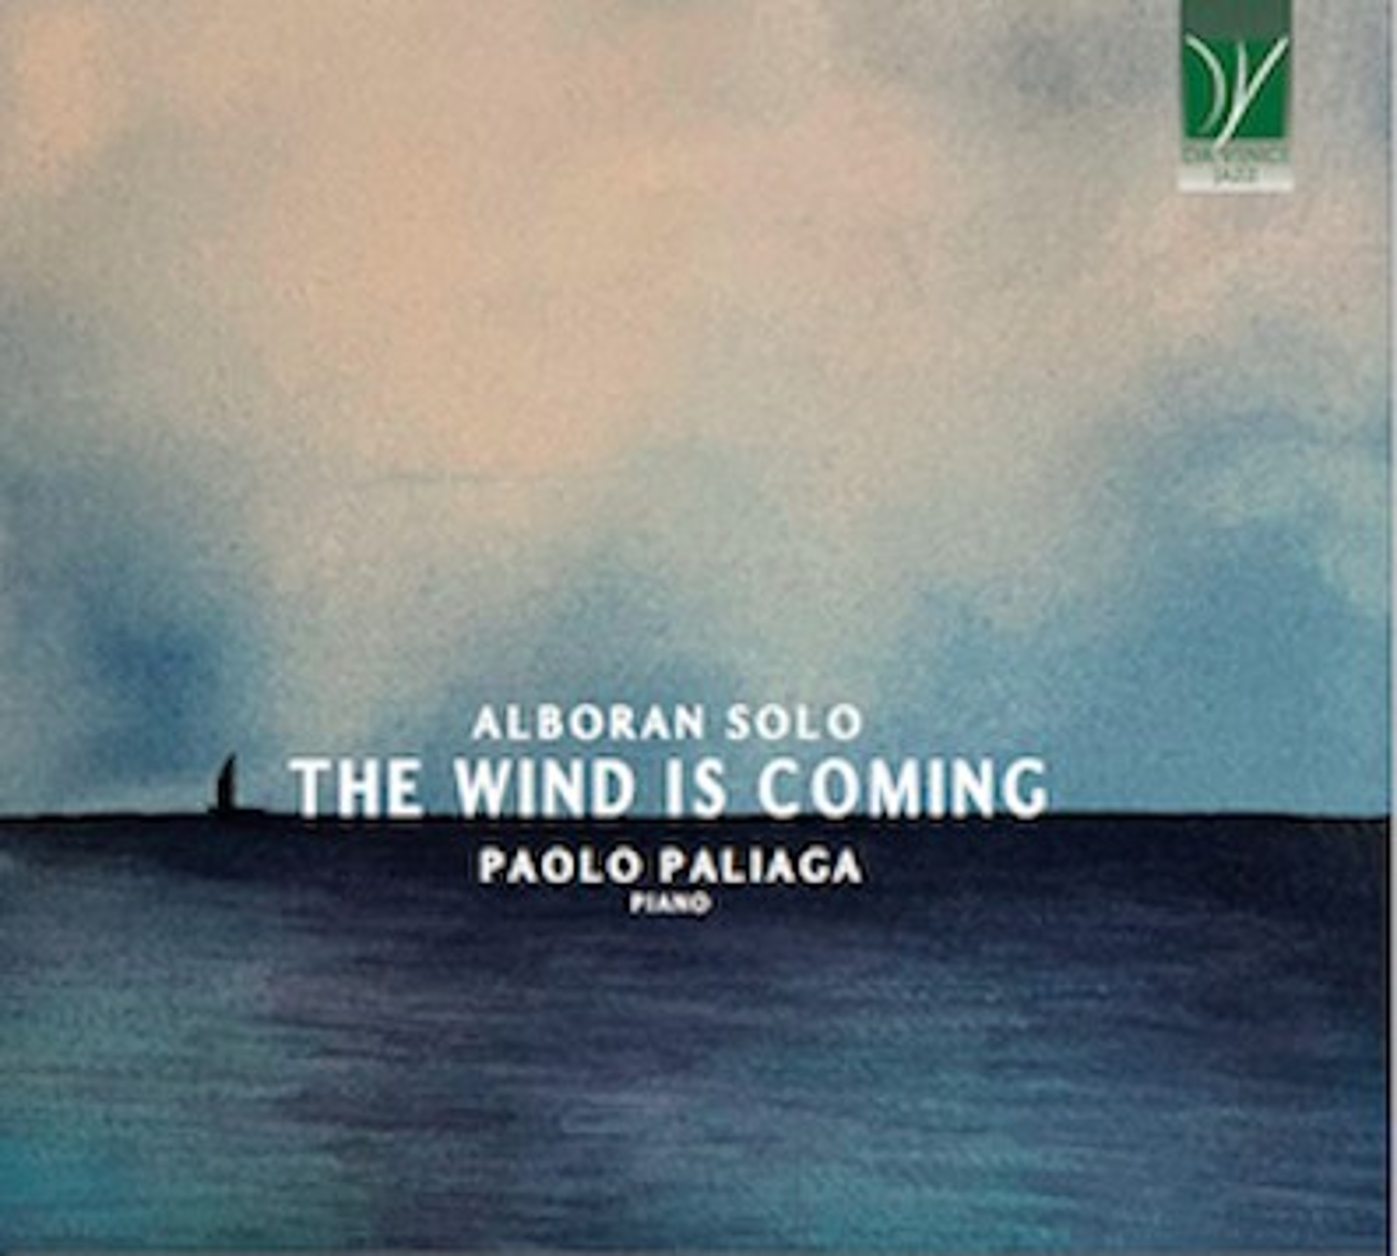 “Alboran Solo - The wind is coming”, il nuovo album di Paolo Paliaga